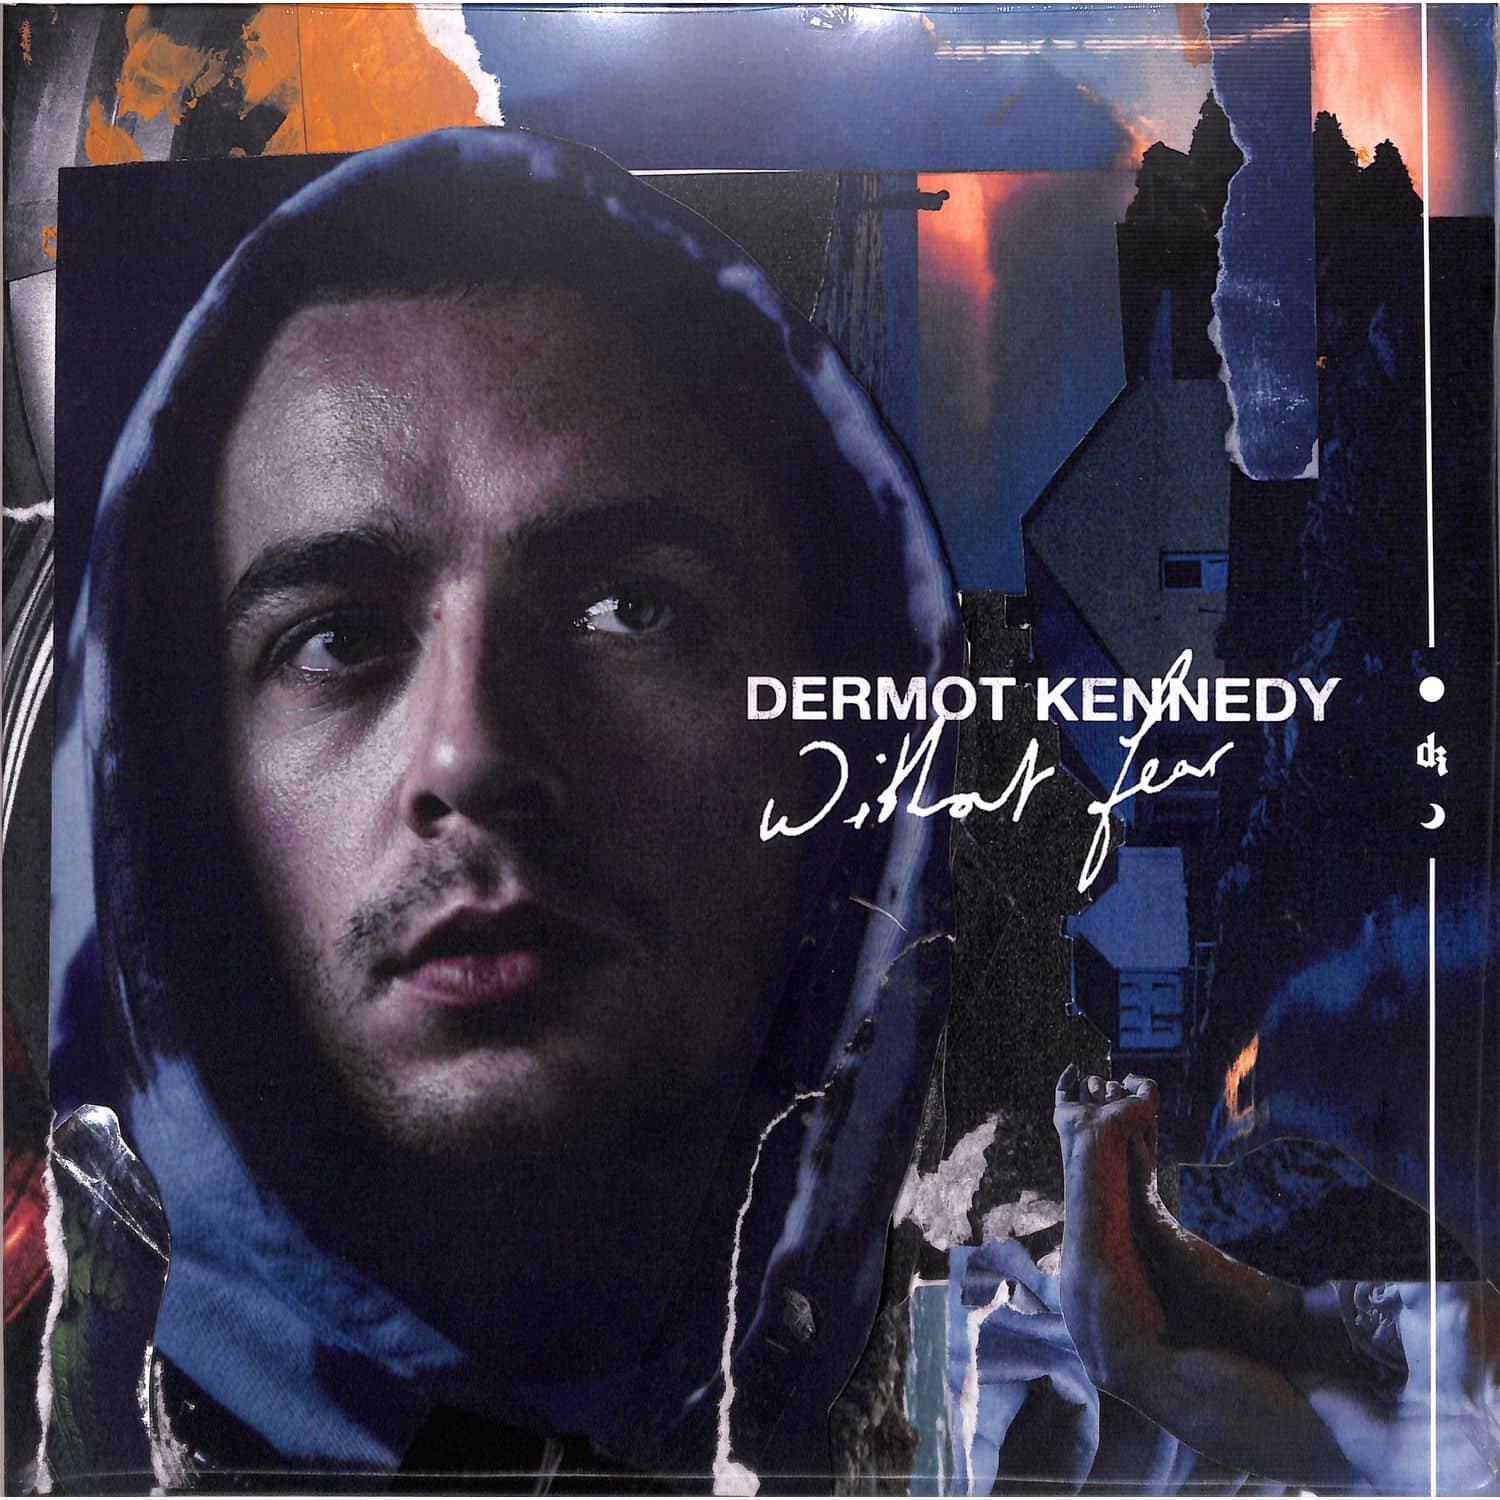 Dermot Kennedy - WITHOUT FEAR 